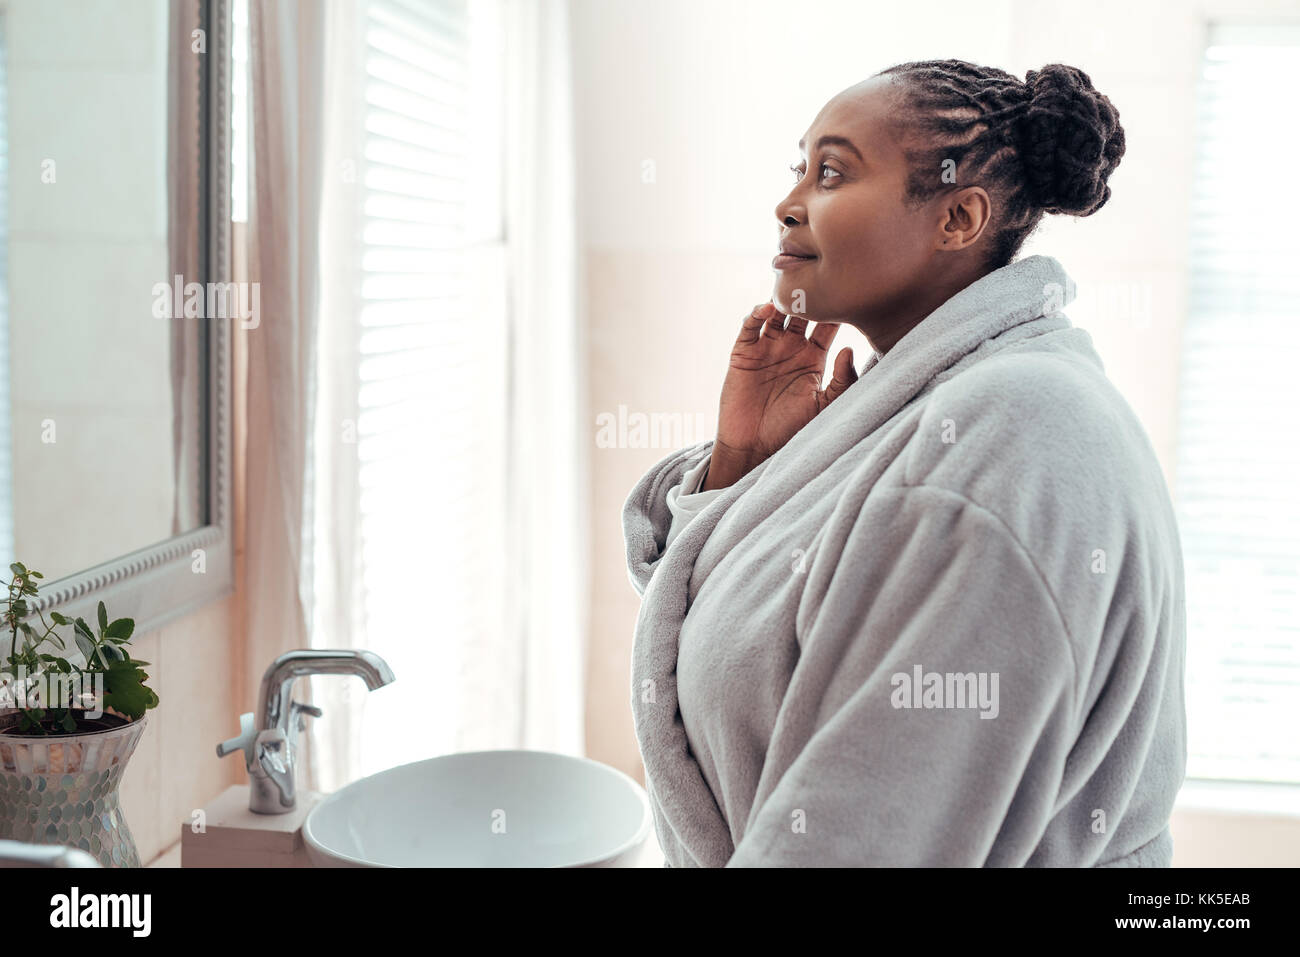 Mujer africana mirando su cutis en un espejo del baño Foto de stock